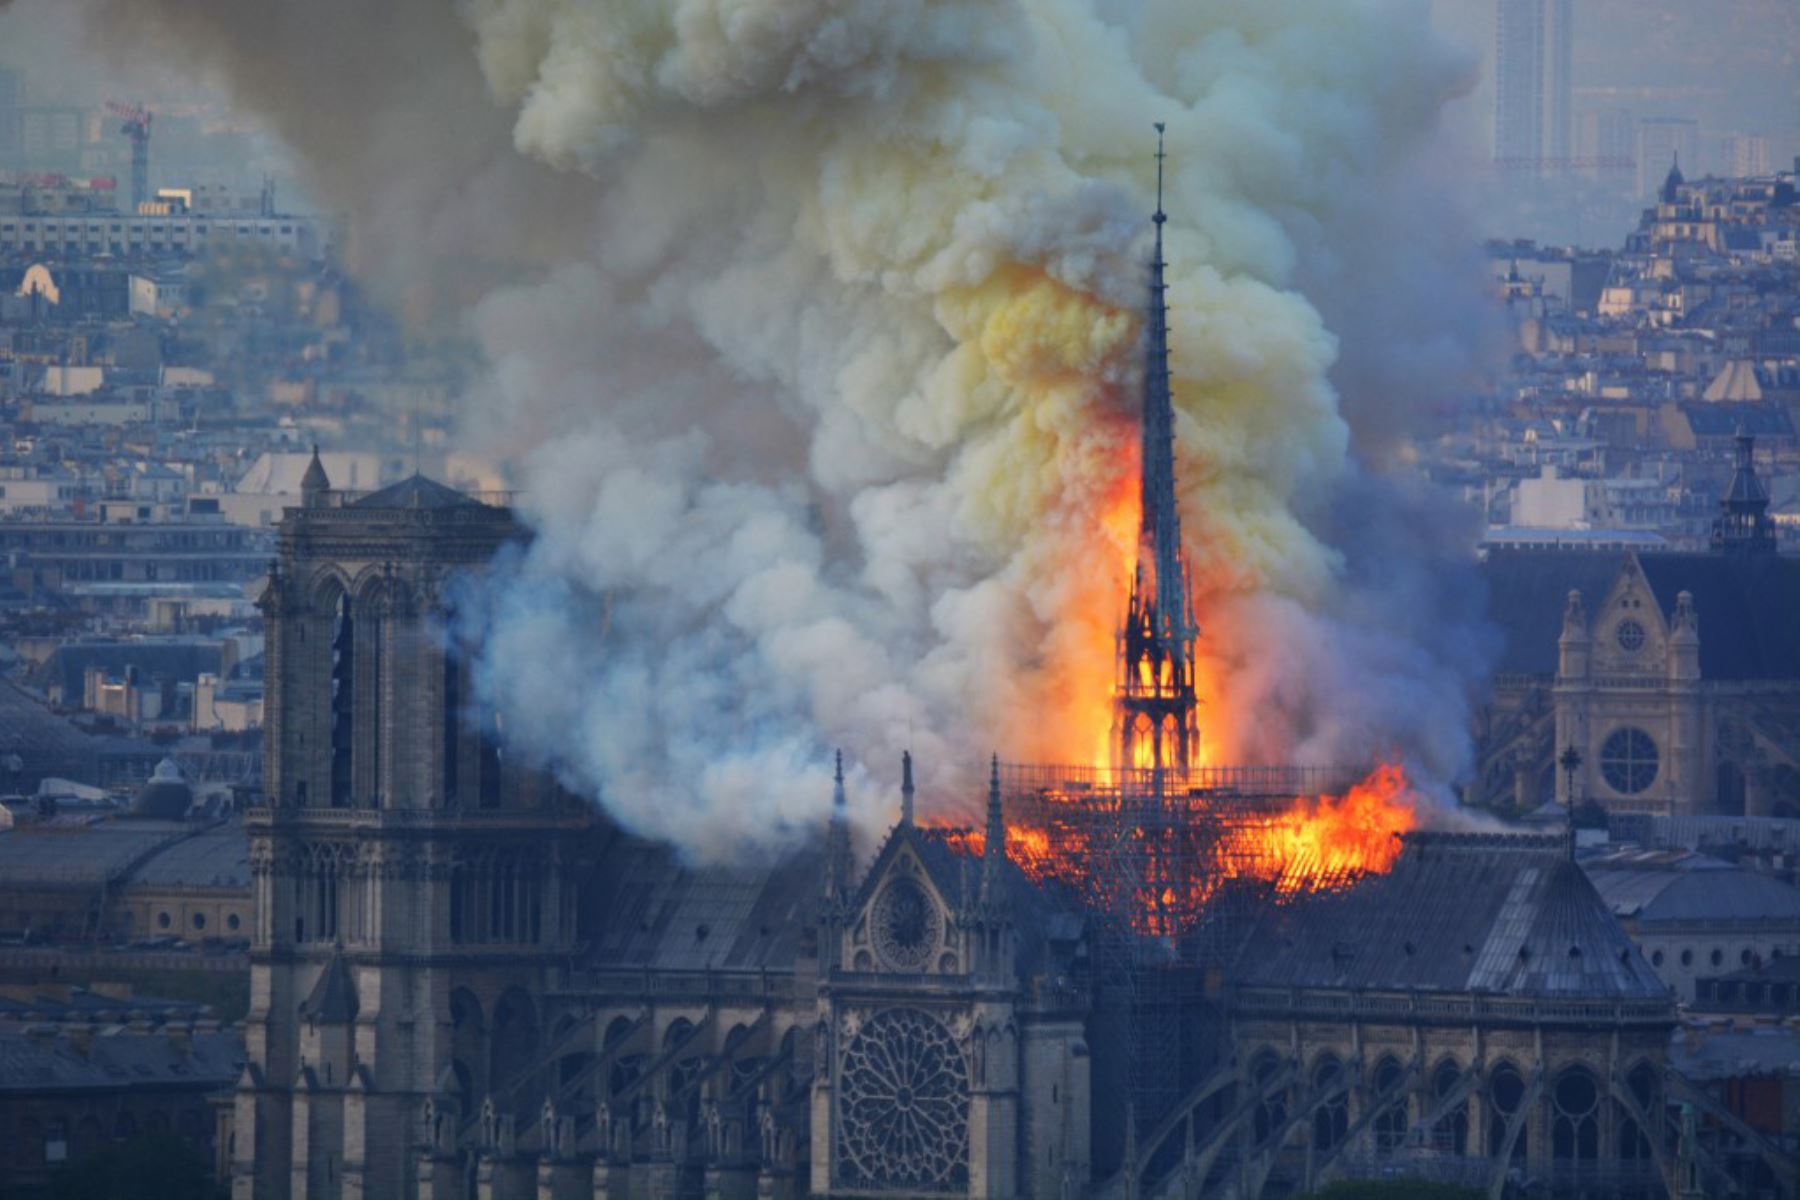 Vista desde el otro lado del río Sena, el humo y las llamas se elevan durante un incendio en la histórica catedral de Notre-Dame en el centro de París.

Foto: AFP